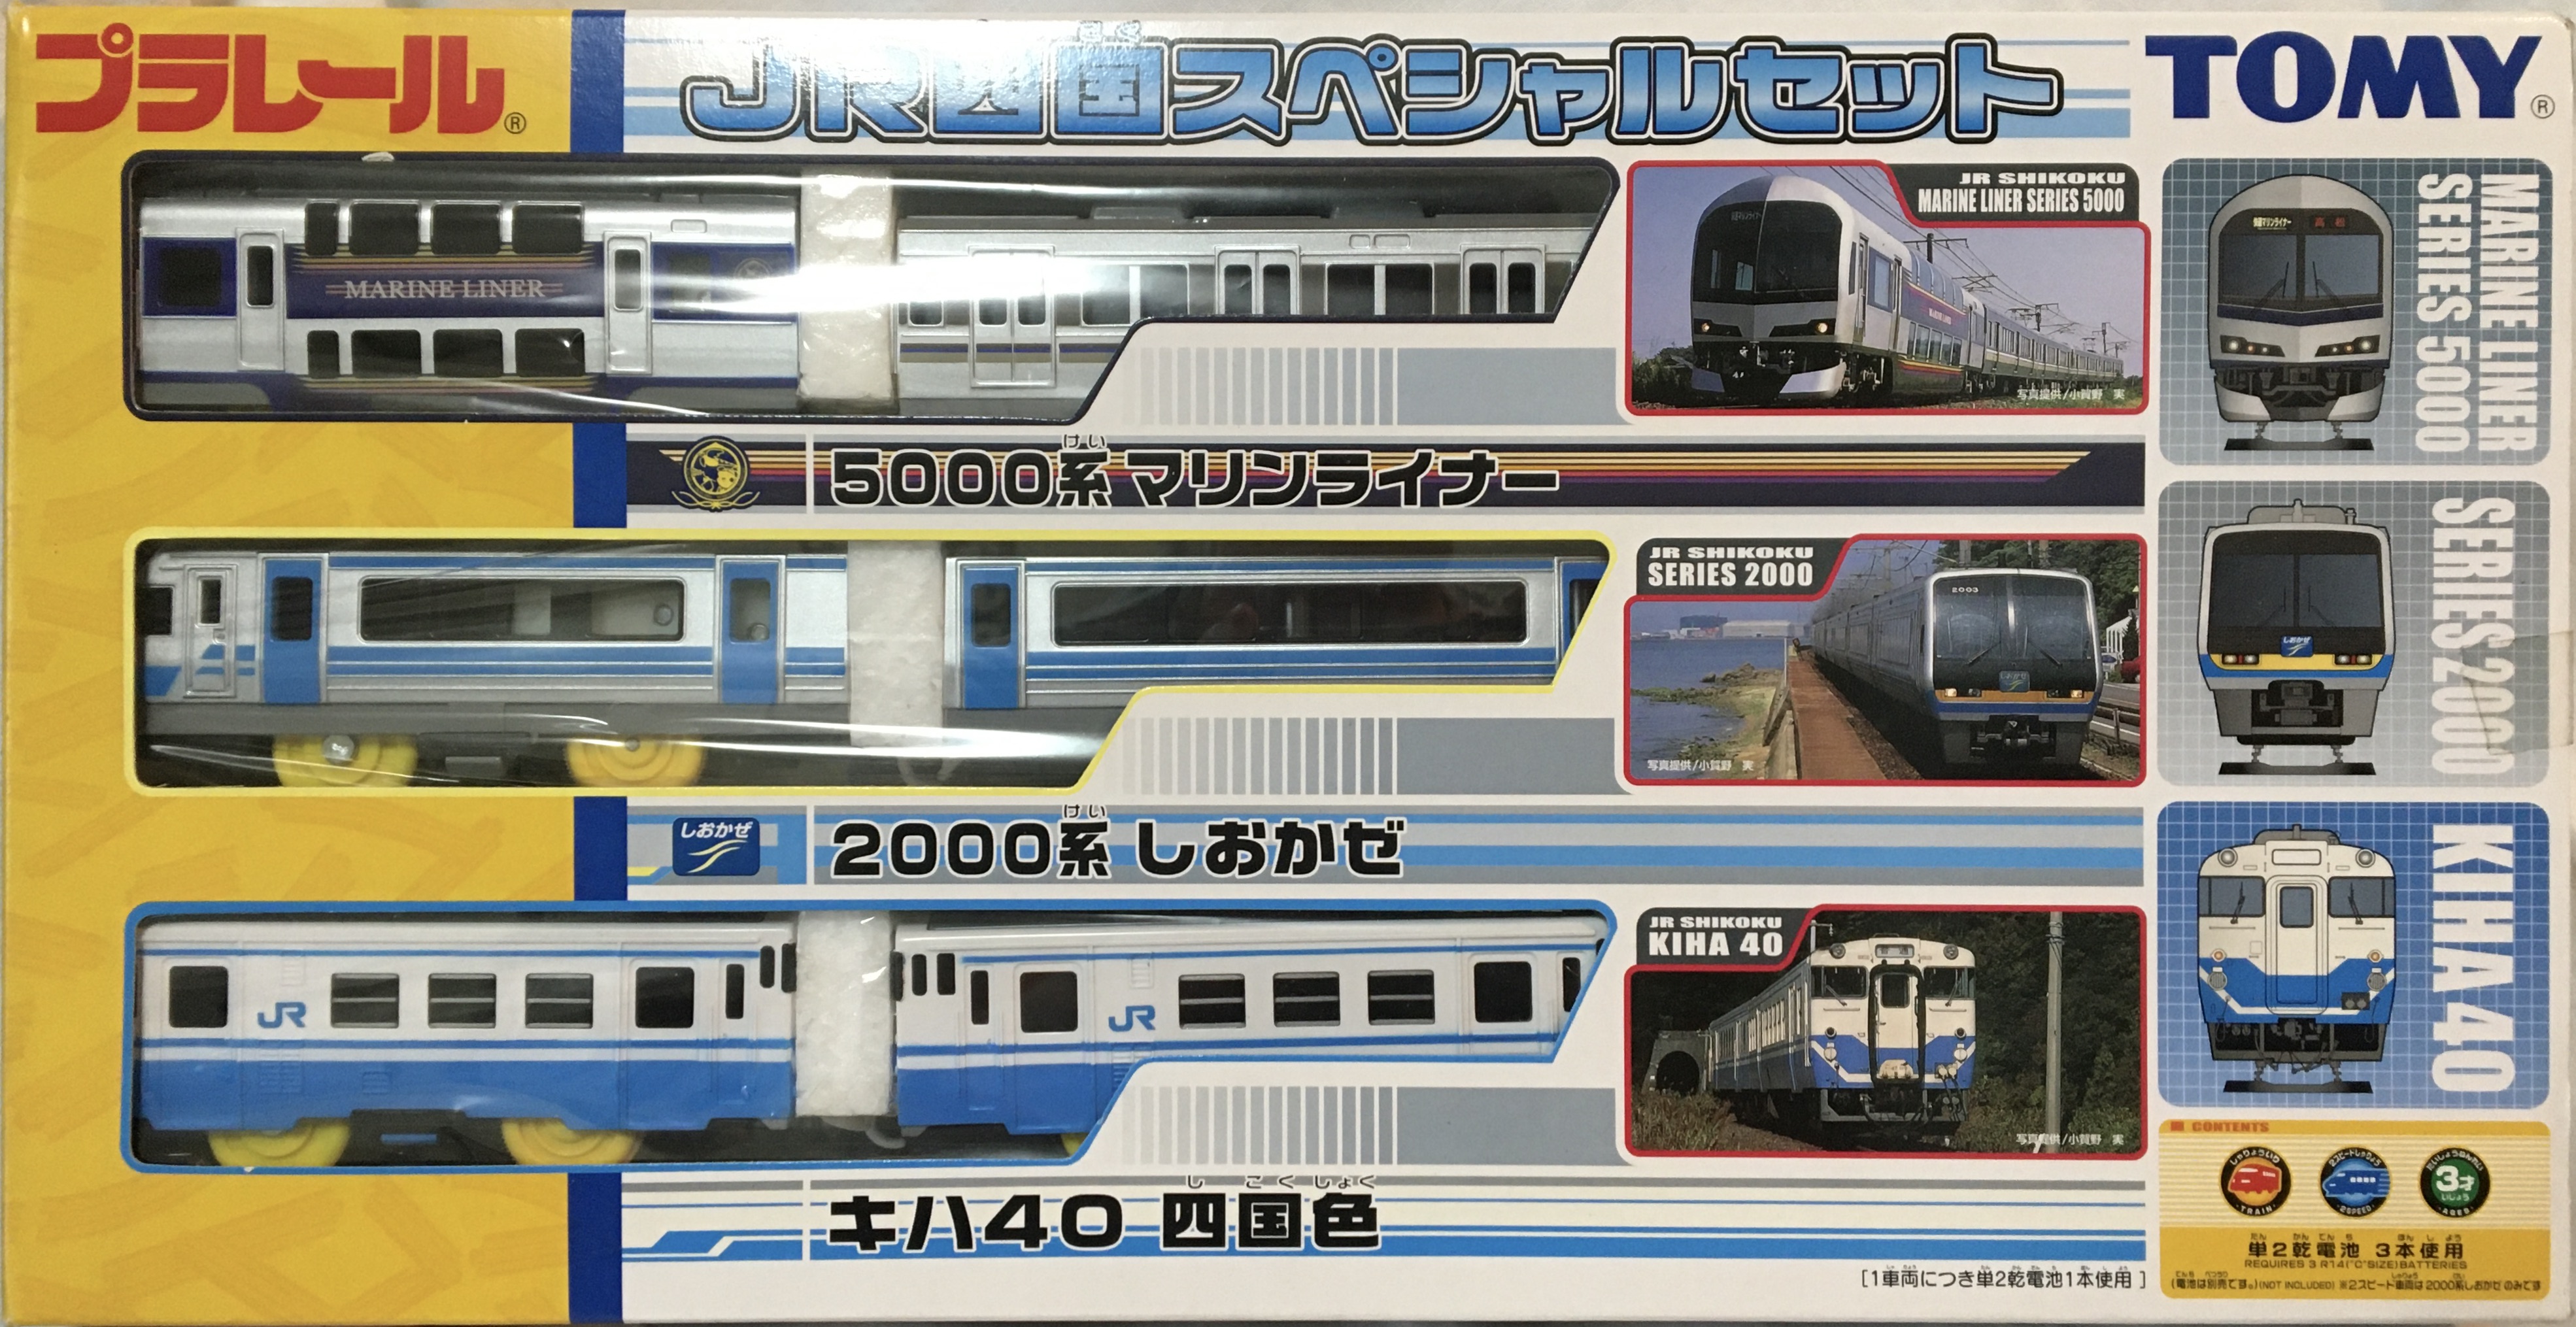 ダブル／ミストブルー プラレール 歴代つばめスペシャルセット 583系 特急 - 鉄道模型